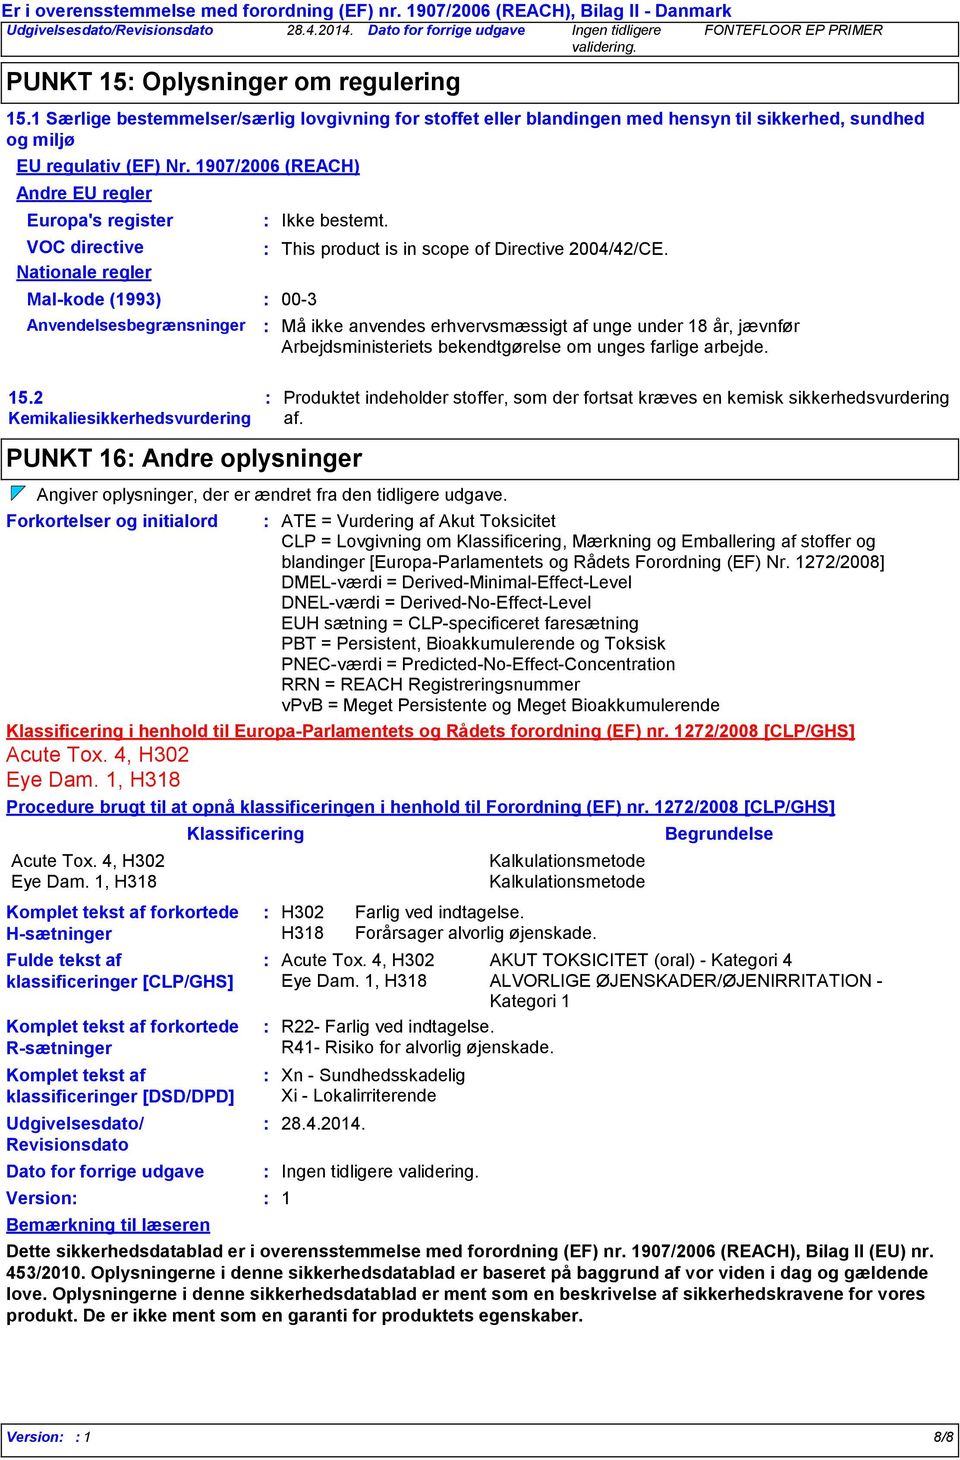 2 Kemikaliesikkerhedsvurdering PUNKT 16 Andre oplysninger Komplet tekst af forkortede Rsætninger Komplet tekst af klassificeringer [DSD/DPD] Udgivelsesdato/ Revisionsdato Version Bemærkning til